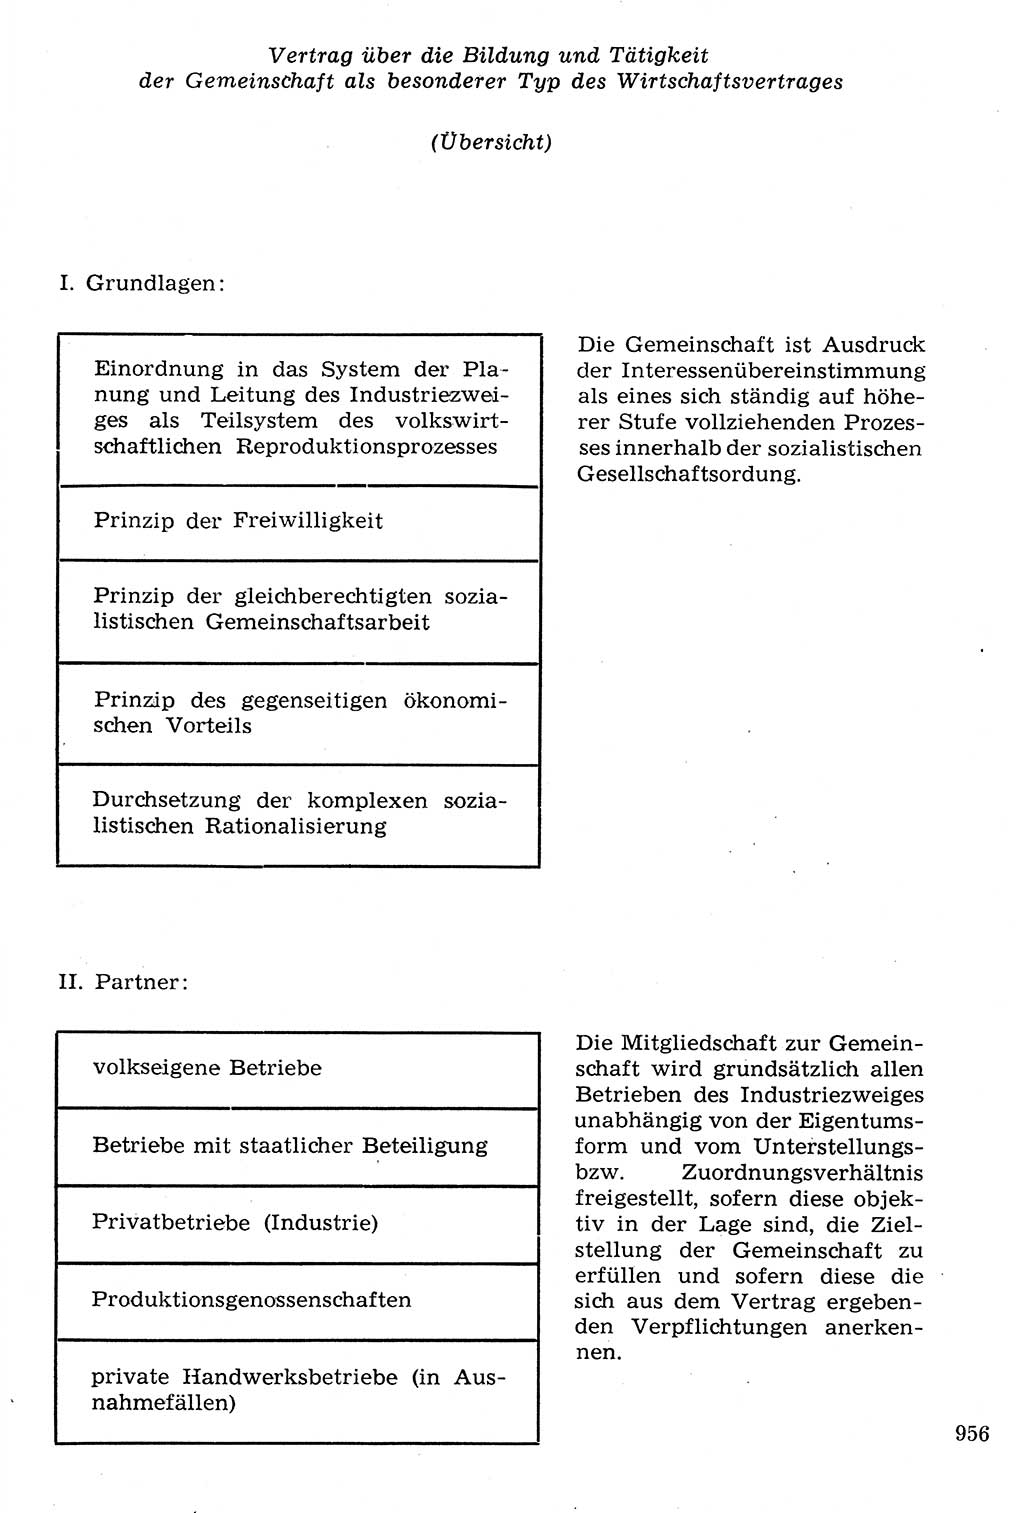 Staat und Recht (StuR), 17. Jahrgang [Deutsche Demokratische Republik (DDR)] 1968, Seite 956 (StuR DDR 1968, S. 956)